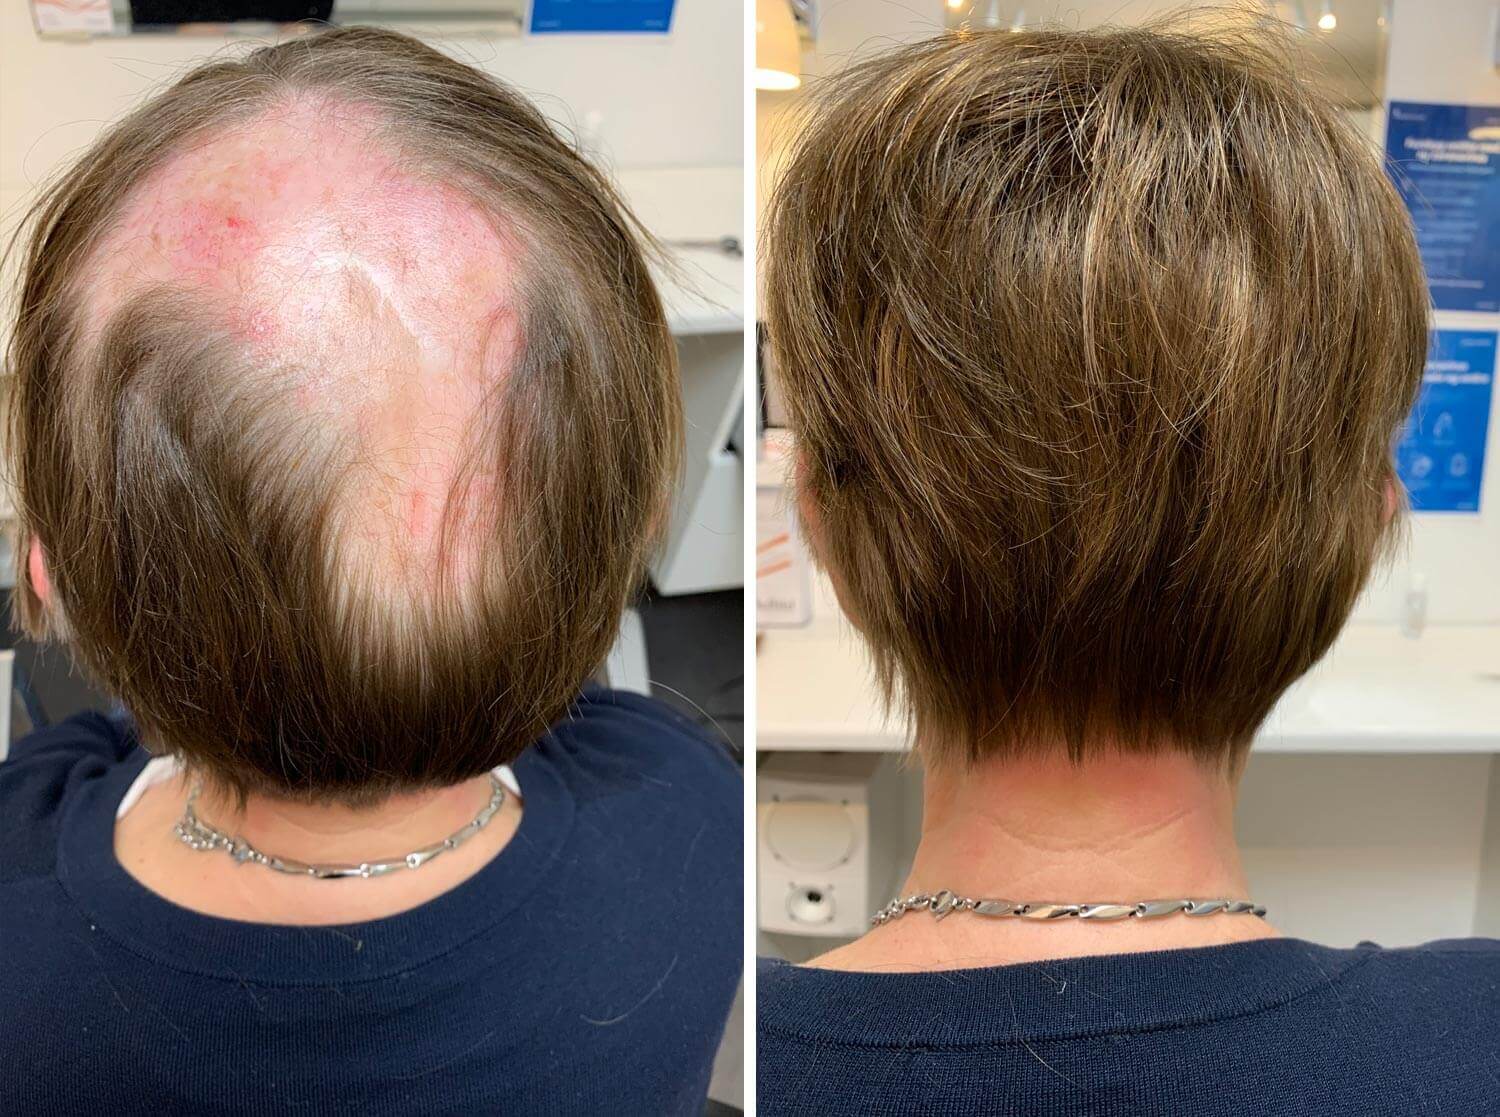 Toftild Hår for Livet kan hjælpe dig med dit hårtab i forbindelse med alopecia. Book en gratis konsultation